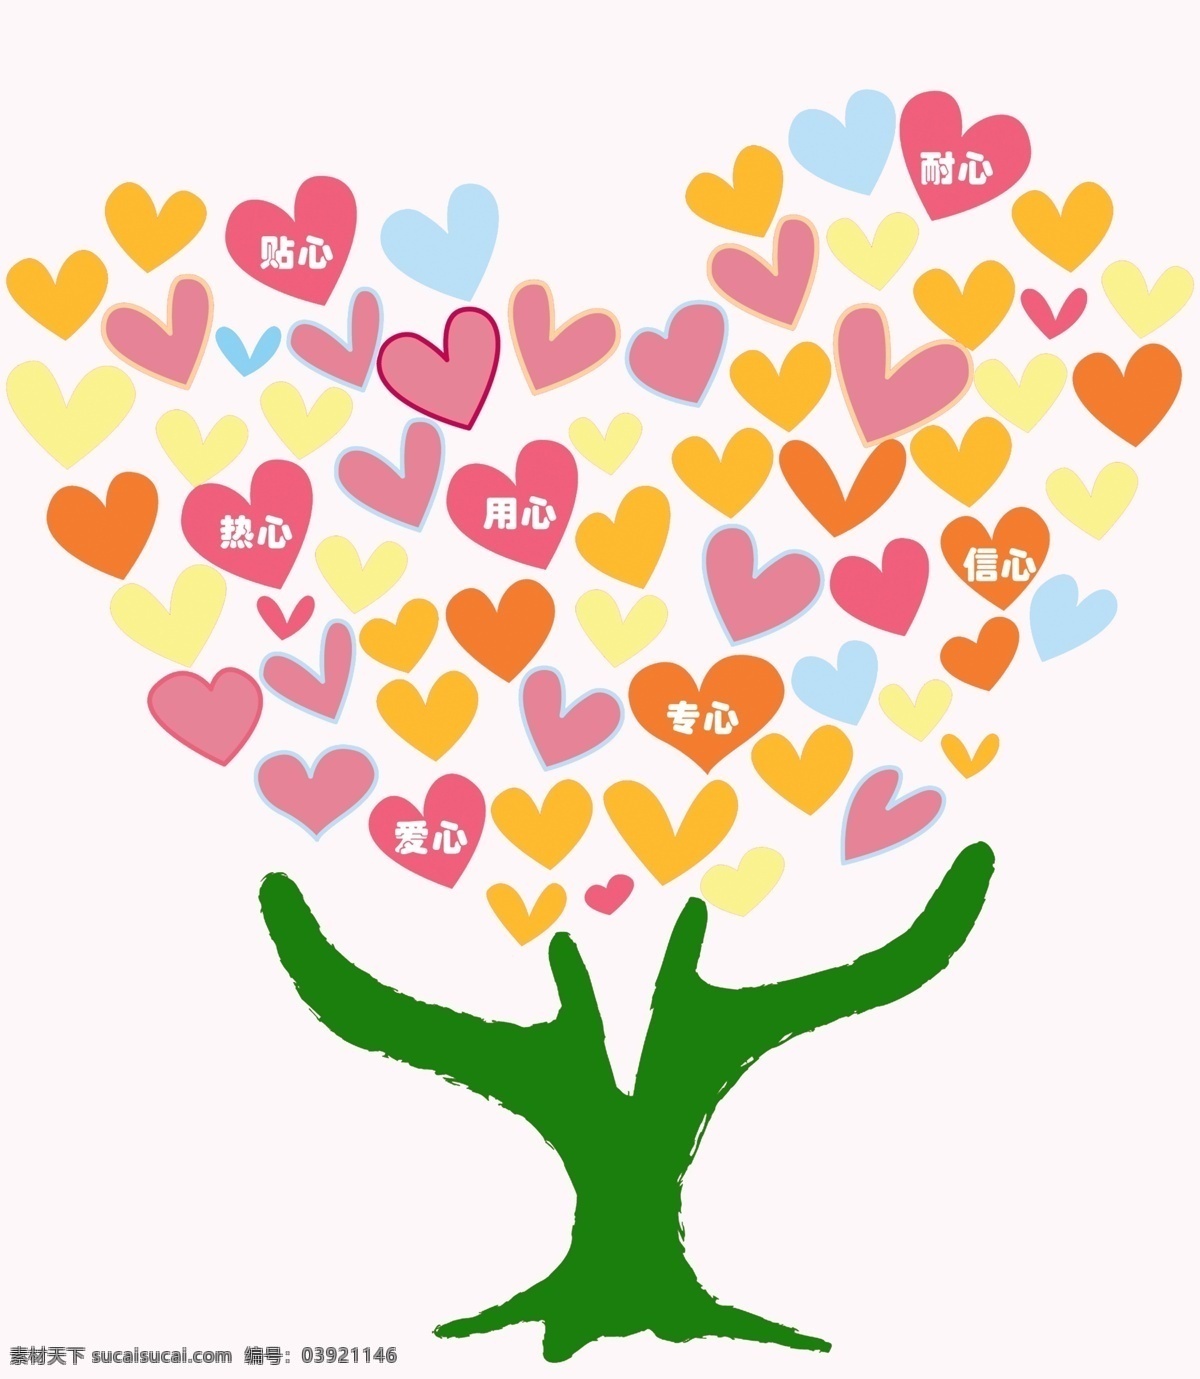 爱心树 爱心 医院爱心 心型 心形 大树 创意 情人节 节日 自然景观 自然风光